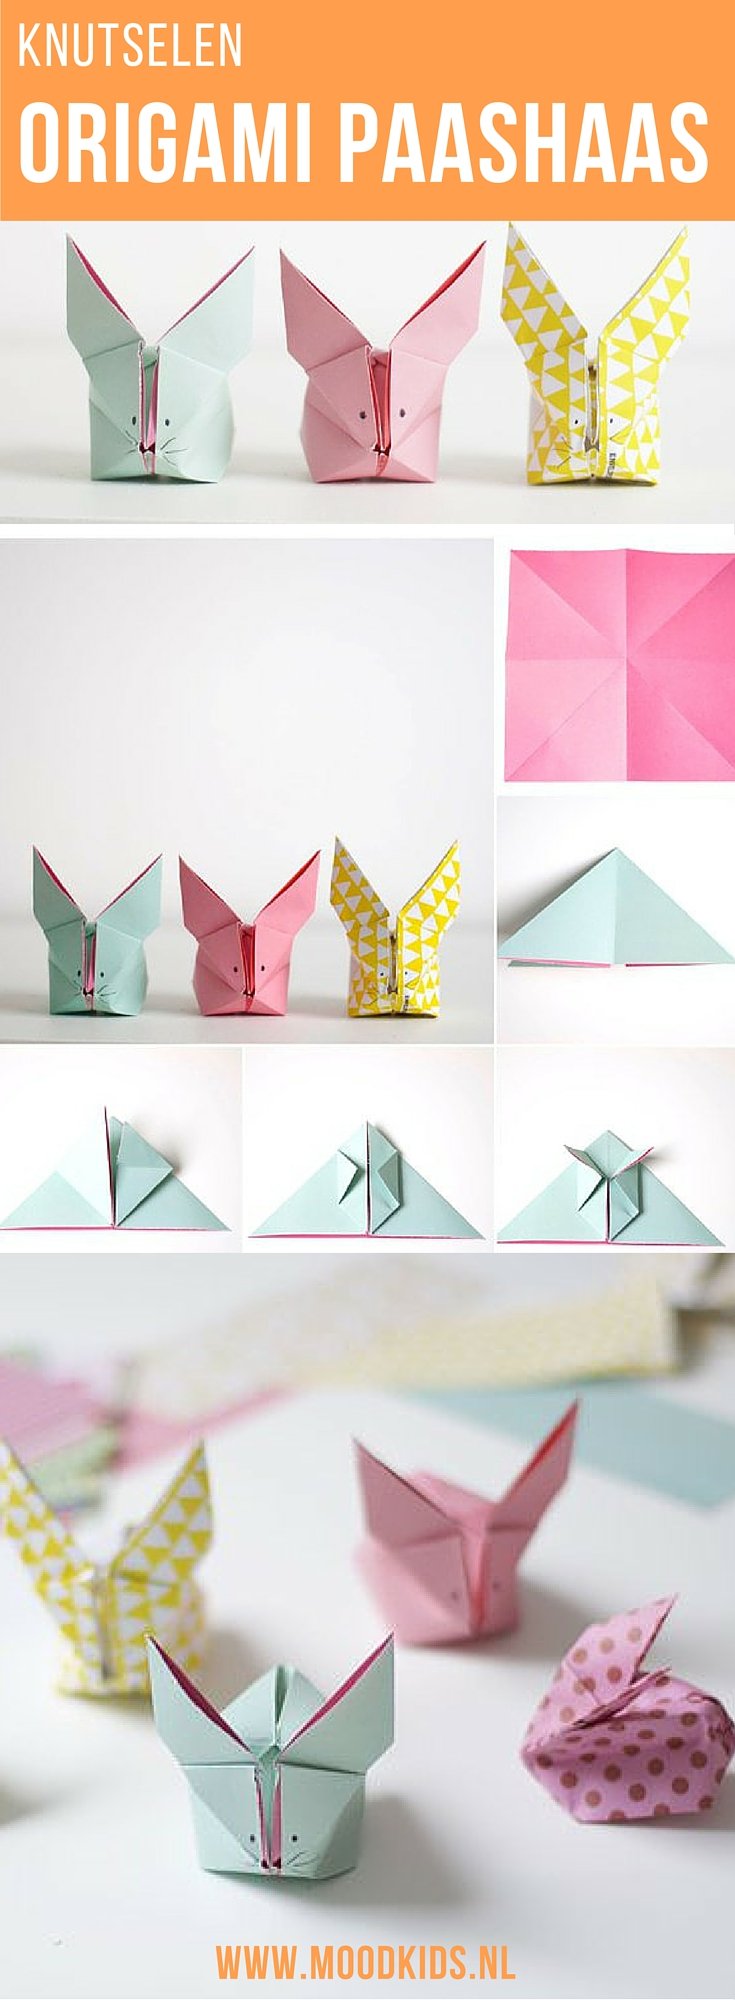 Knutselen voor Pasen. Vouw deze leuke origami paashaasjes in alle kleuren. Samen met de kinderen heb je in no-time een huis vol van deze leukerds. Ga naar de site voor de stap voor stap beschrijving.